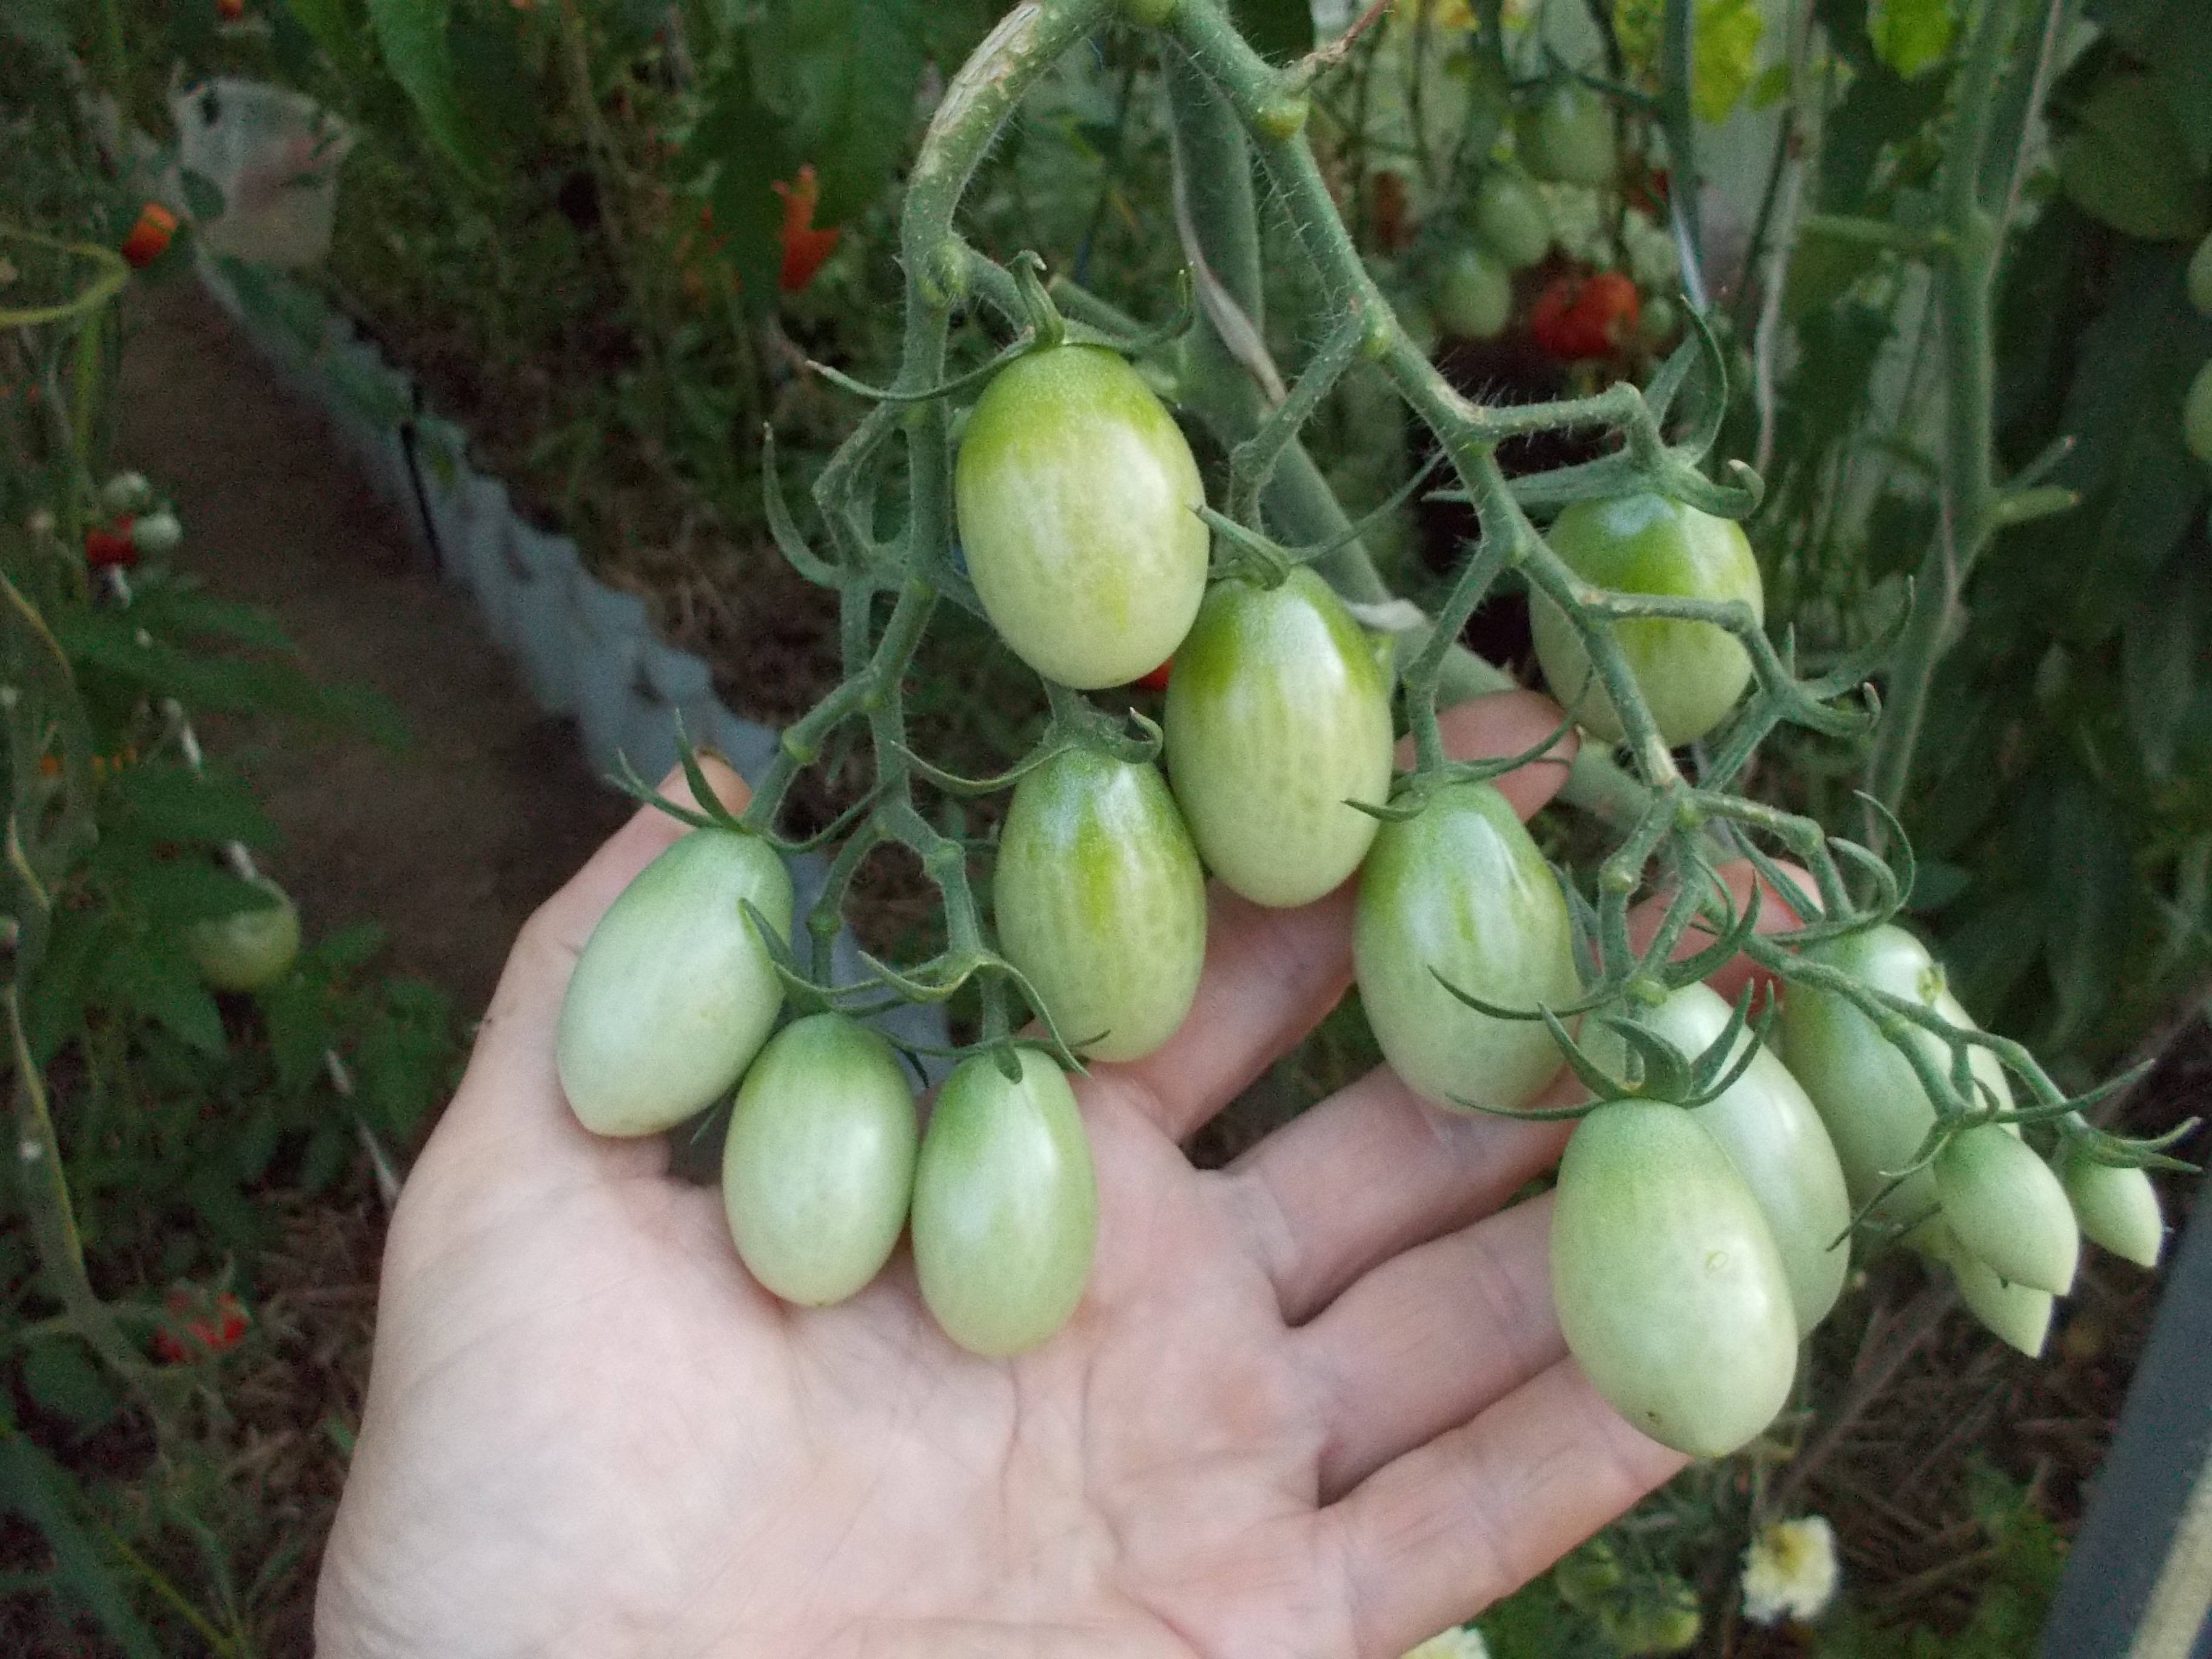 Томат чио-чио-сан: характеристики и описание сорта помидоров, отзывы о его урожайности, фото кустов и поспевших плодов